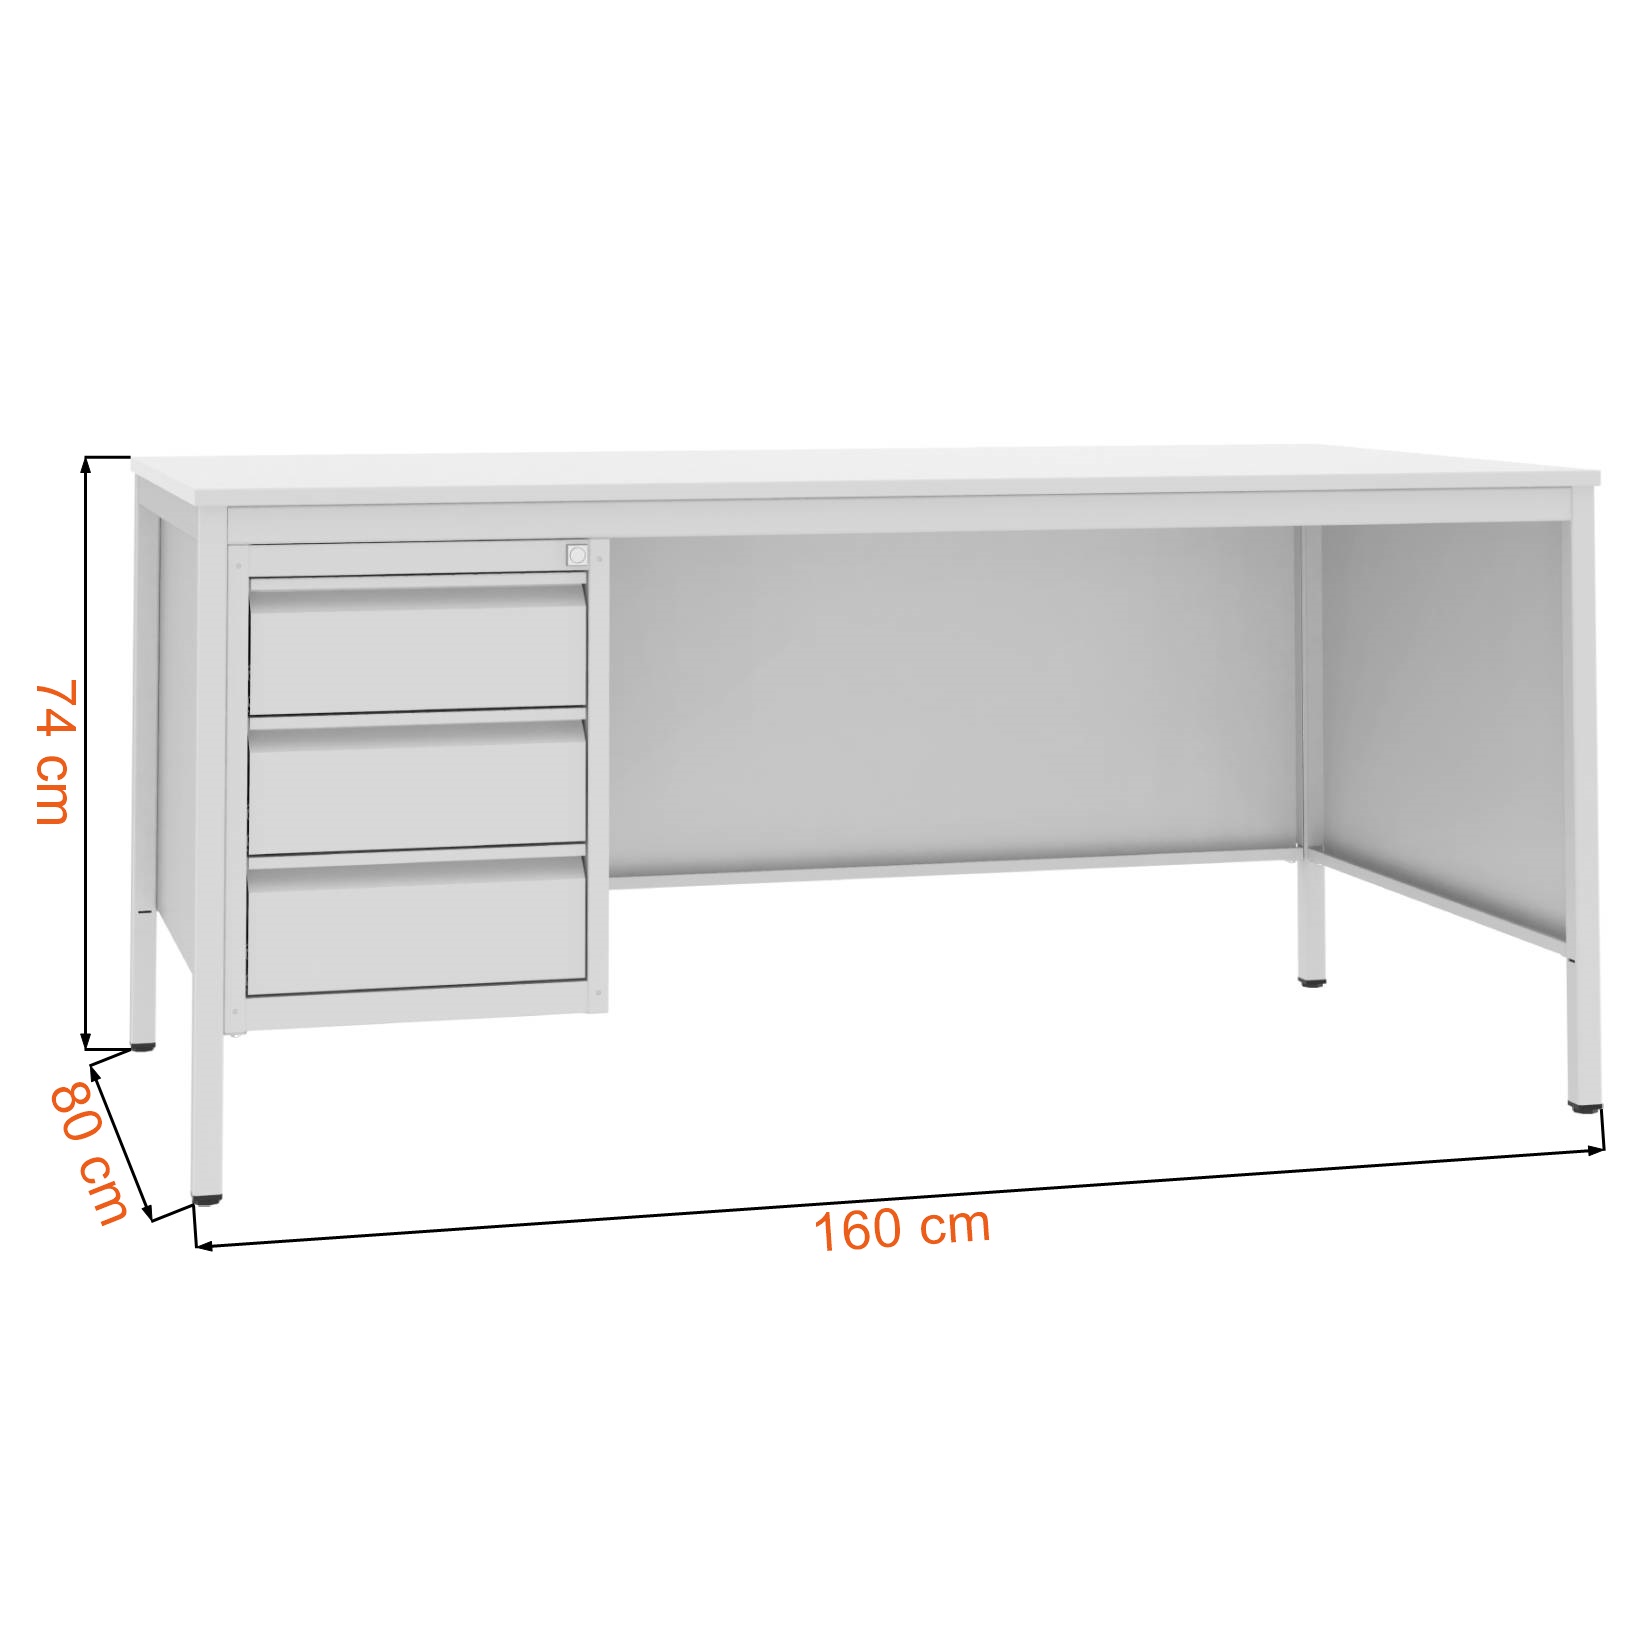 Wymiary biurka medycznego szarego Malow BIM 031 ST o szerokości 160 cm